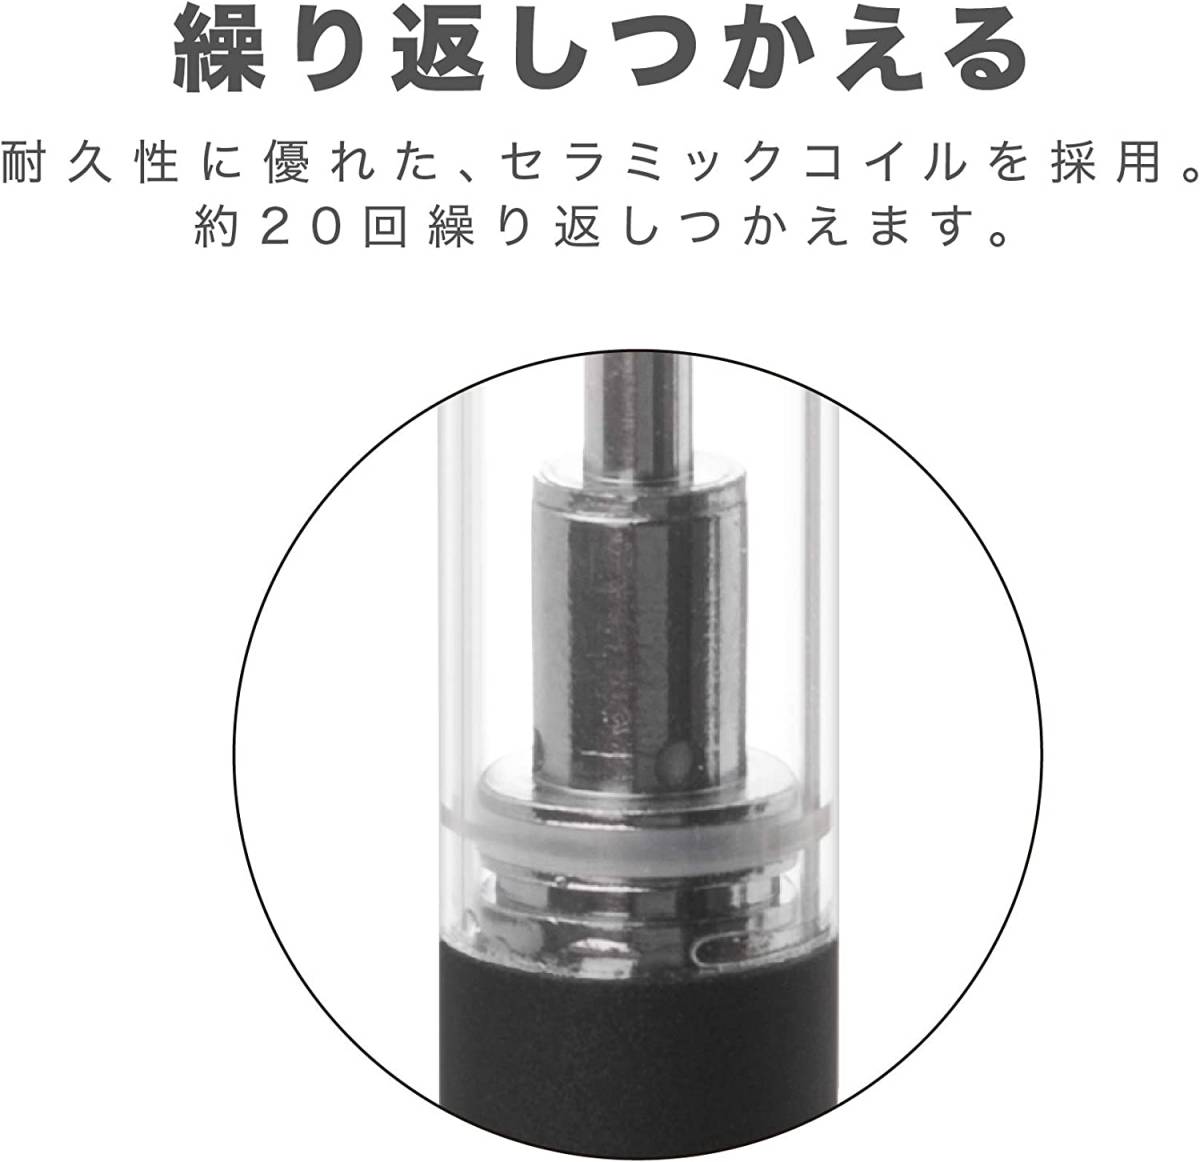 新品 送料無 10箱 C-Tec DUO 交換用アトマイザーセット たばこカプセル対応 日本製無香料リキッド 電子タバコ シーテック デュオ